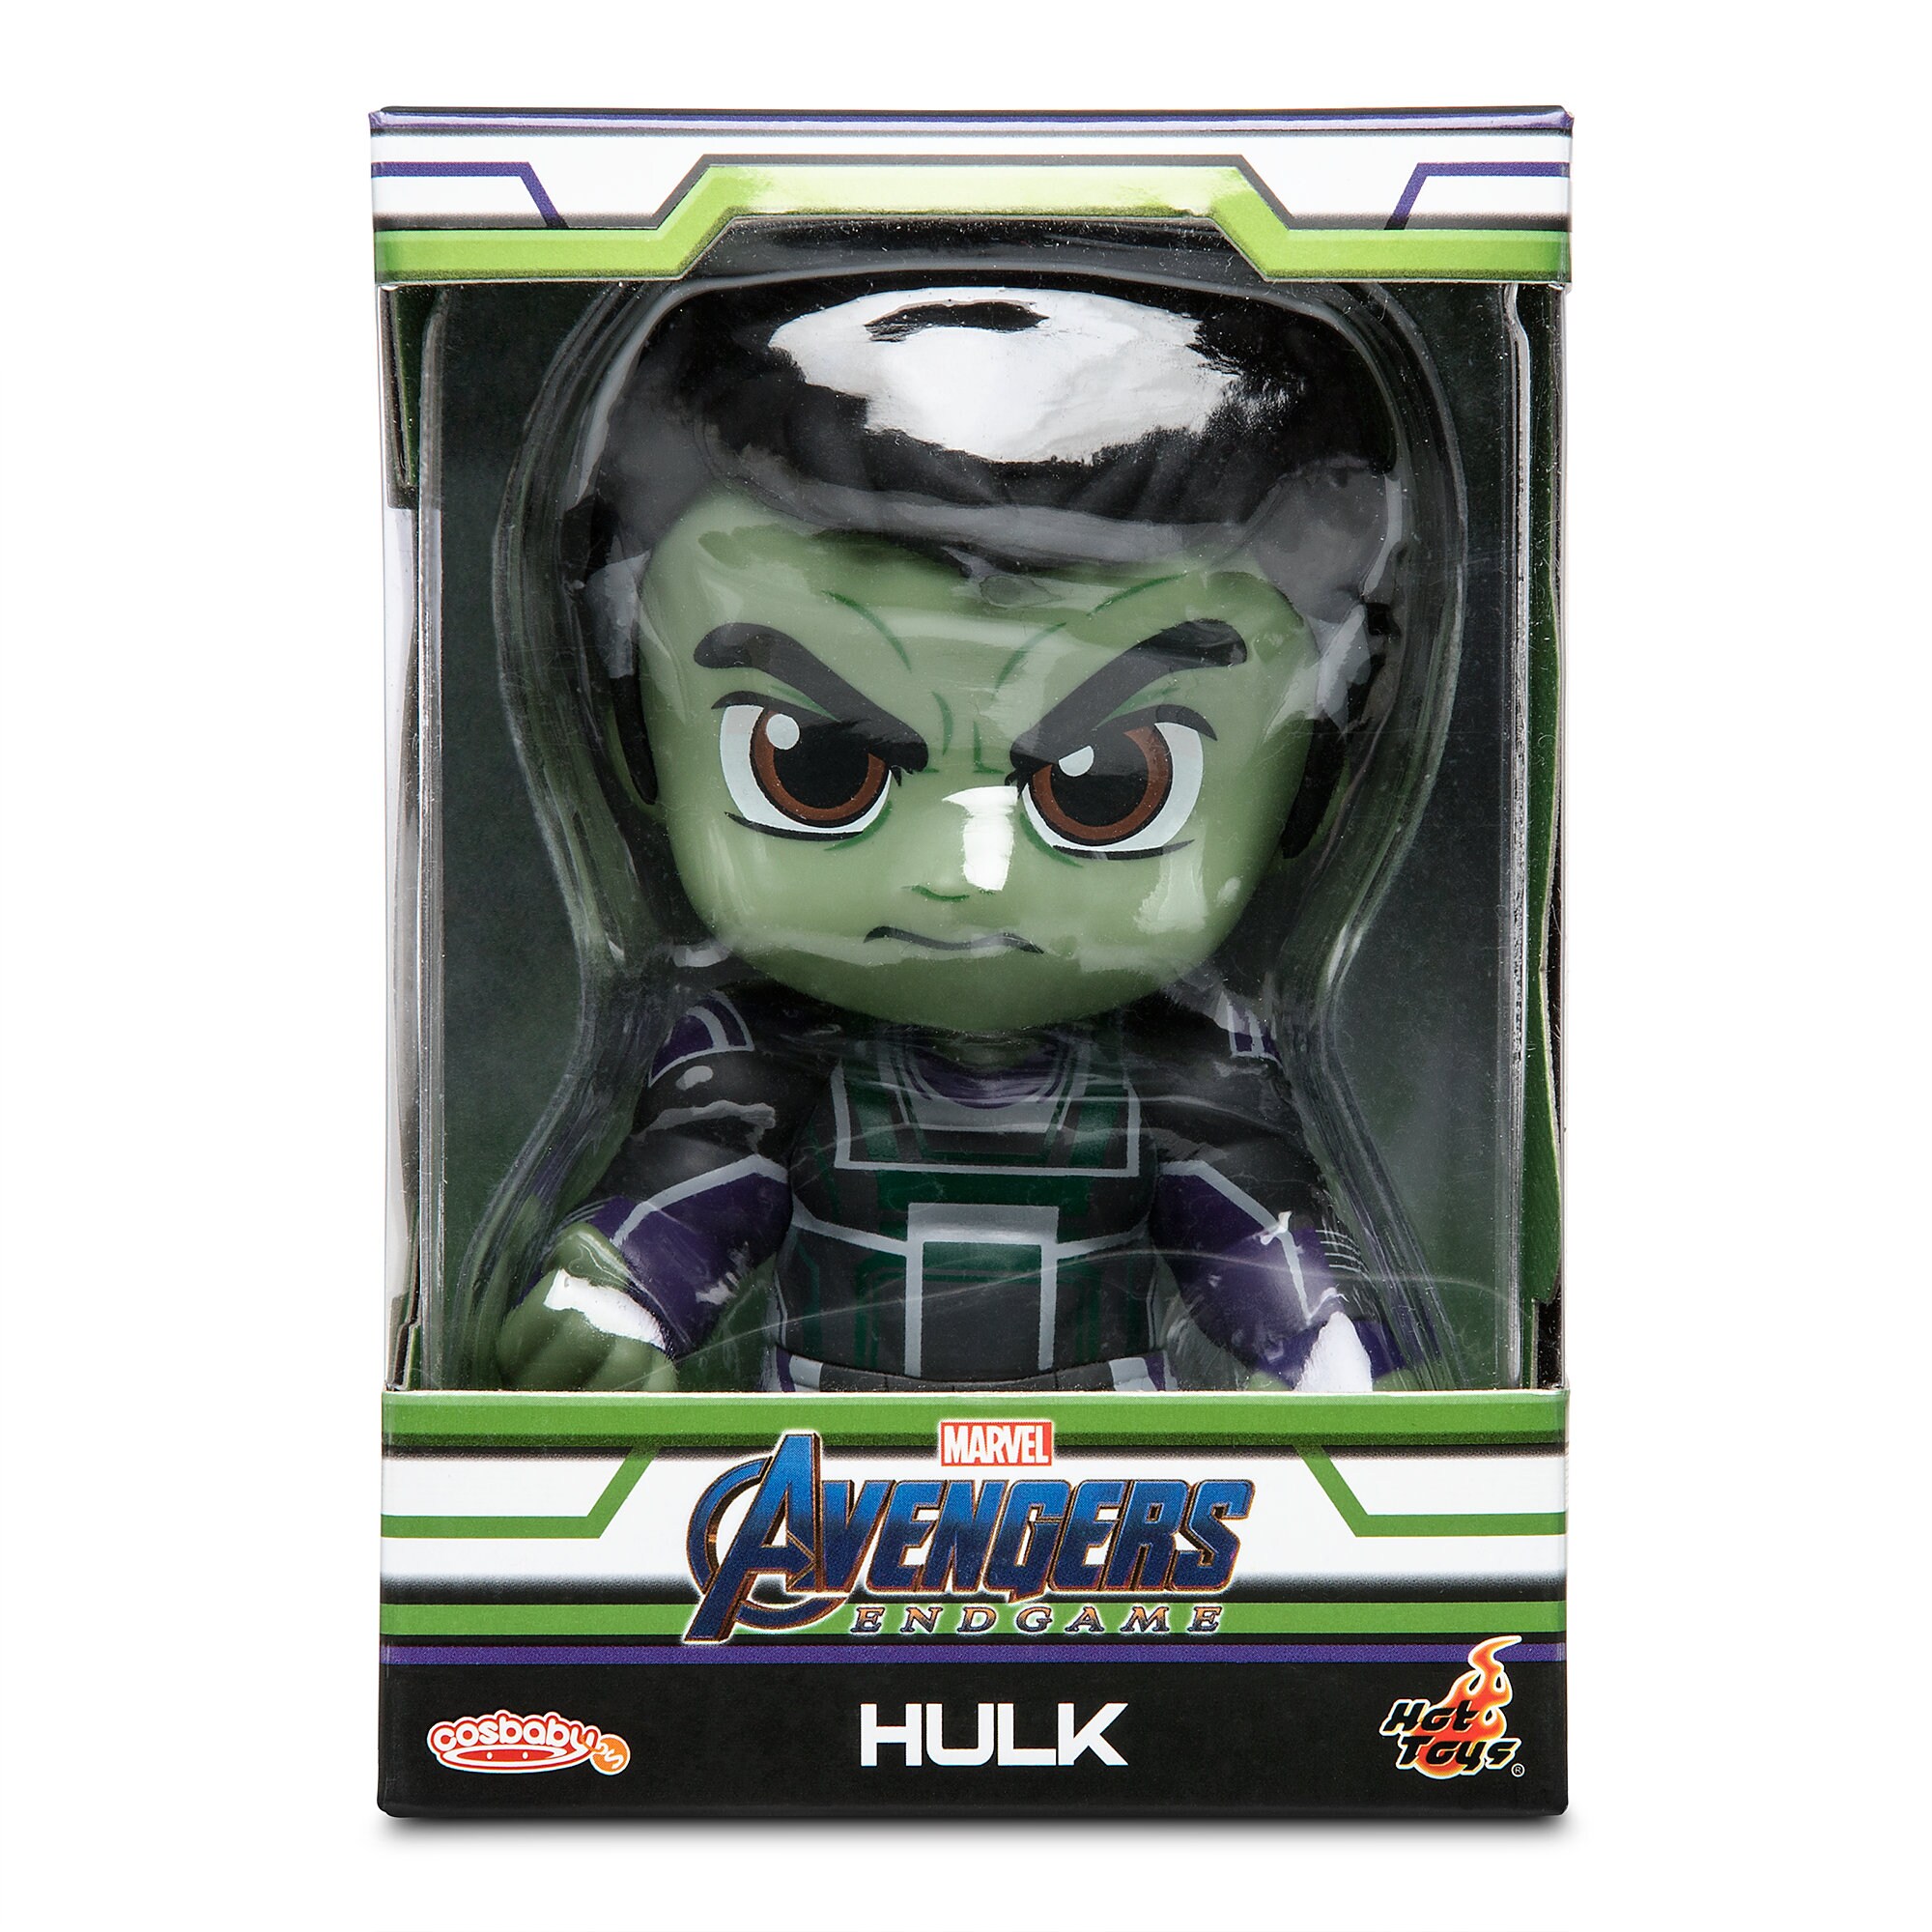 Hulk Cosbaby Bobble-Head Figure by Hot Toys - Marvel's Avengers: Endgame